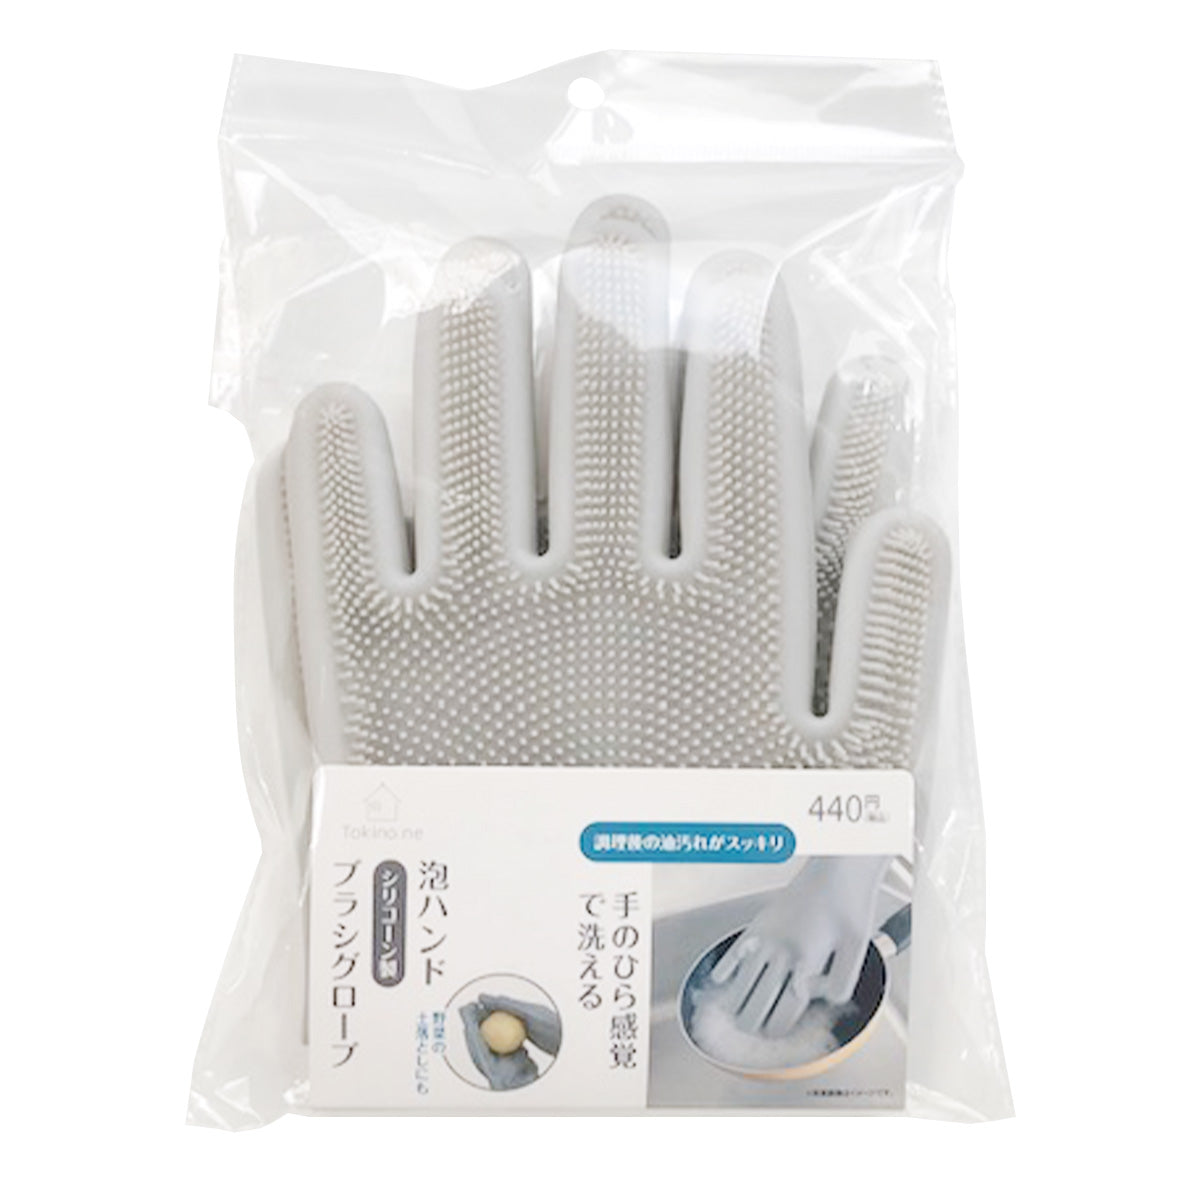 大掃除 ブラシ手袋 シリコン製 Tokinone PB.泡ハンド シリコーン製ブラシグローブ 055670